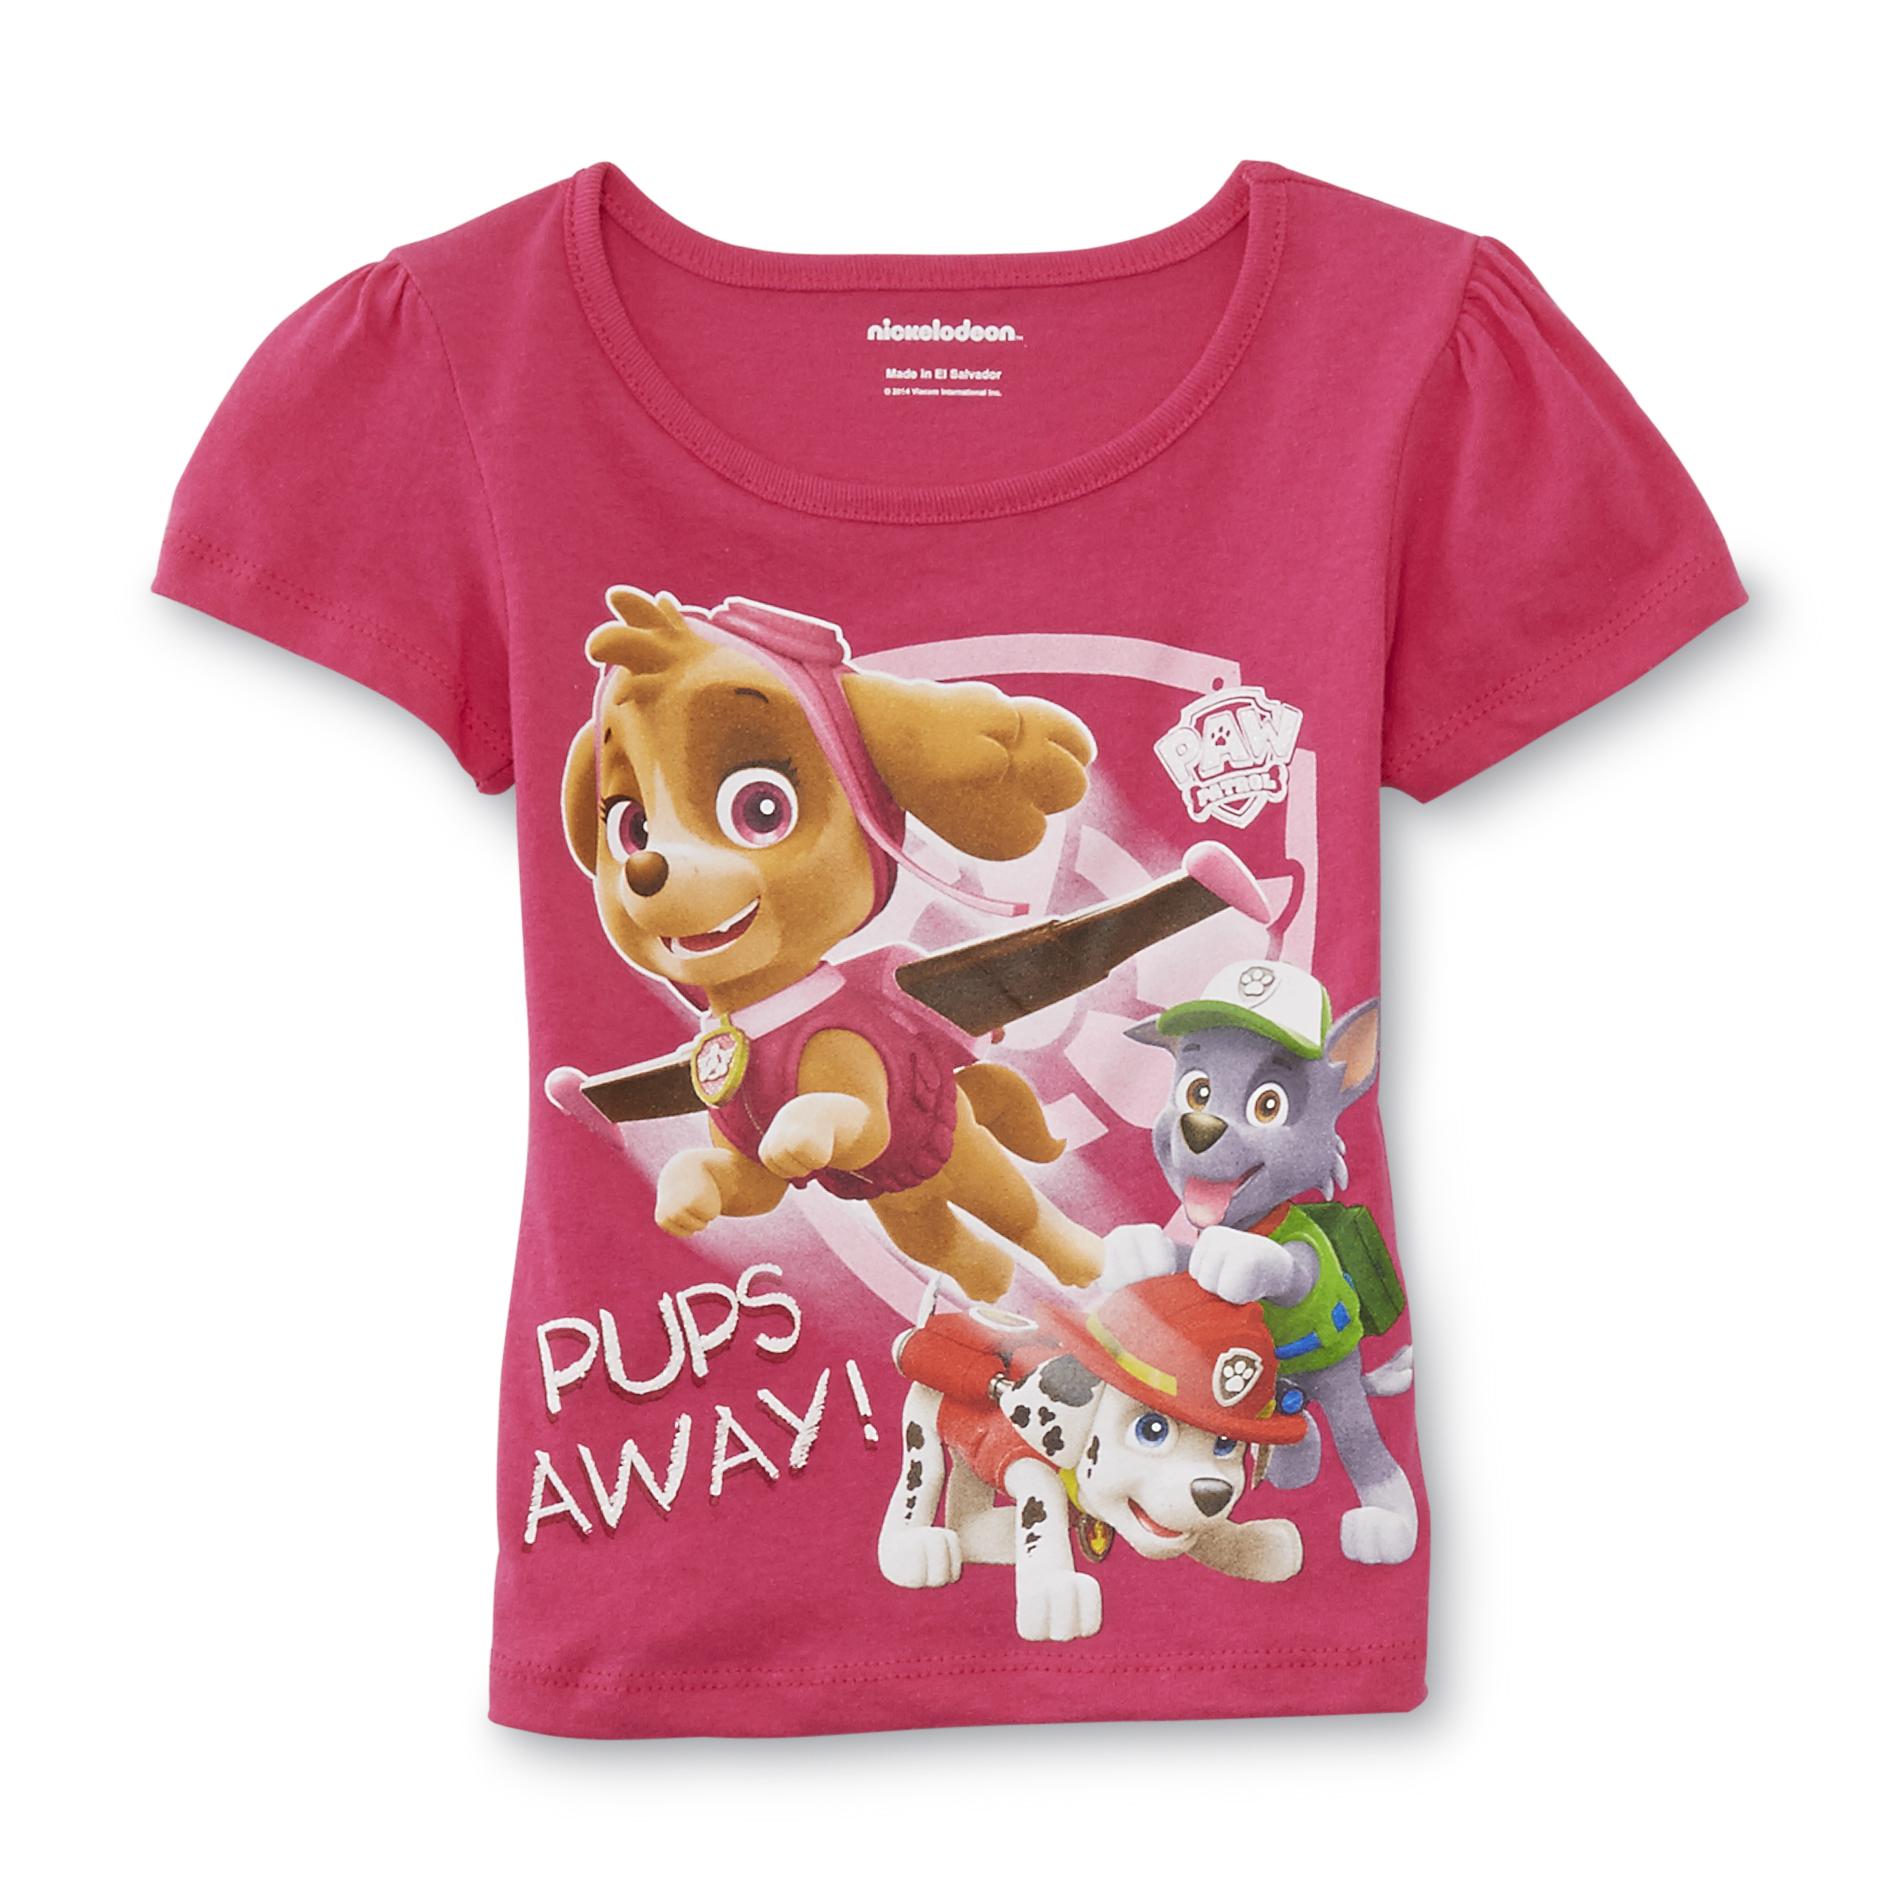 Nickelodeon Paw Patrol Toddler Girl's Graphic T-Shirt